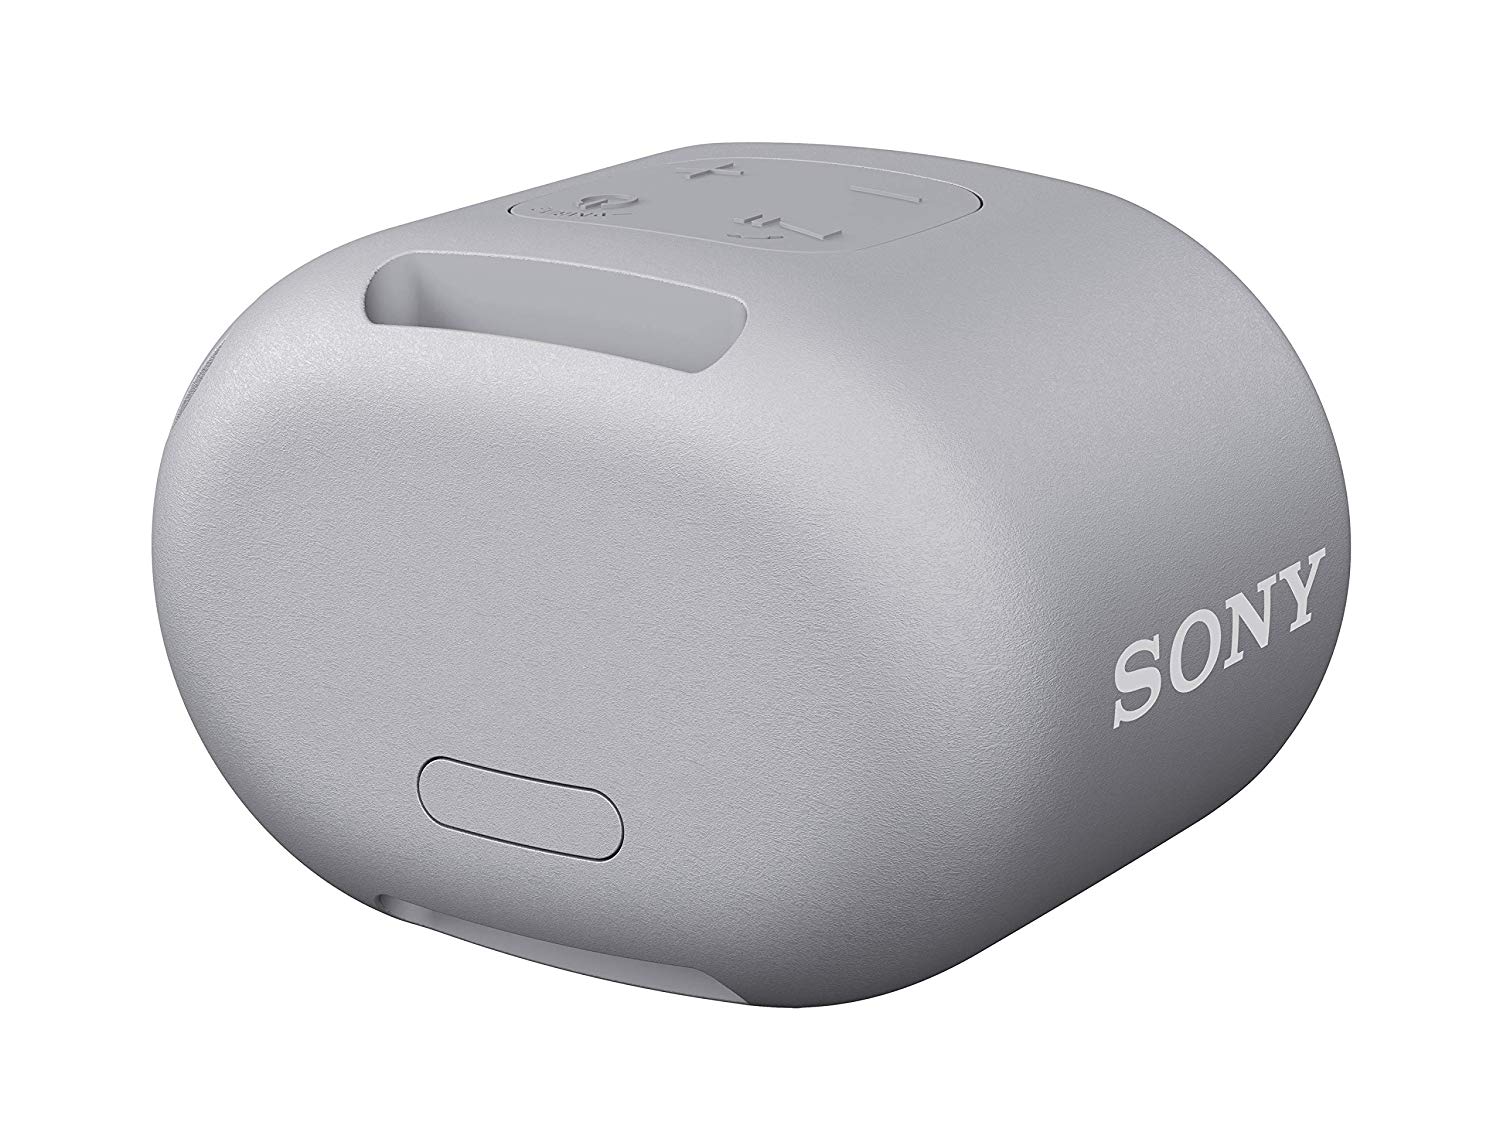 Loa Sony SRS-XB01 với nhiều tính năng bổ sung 